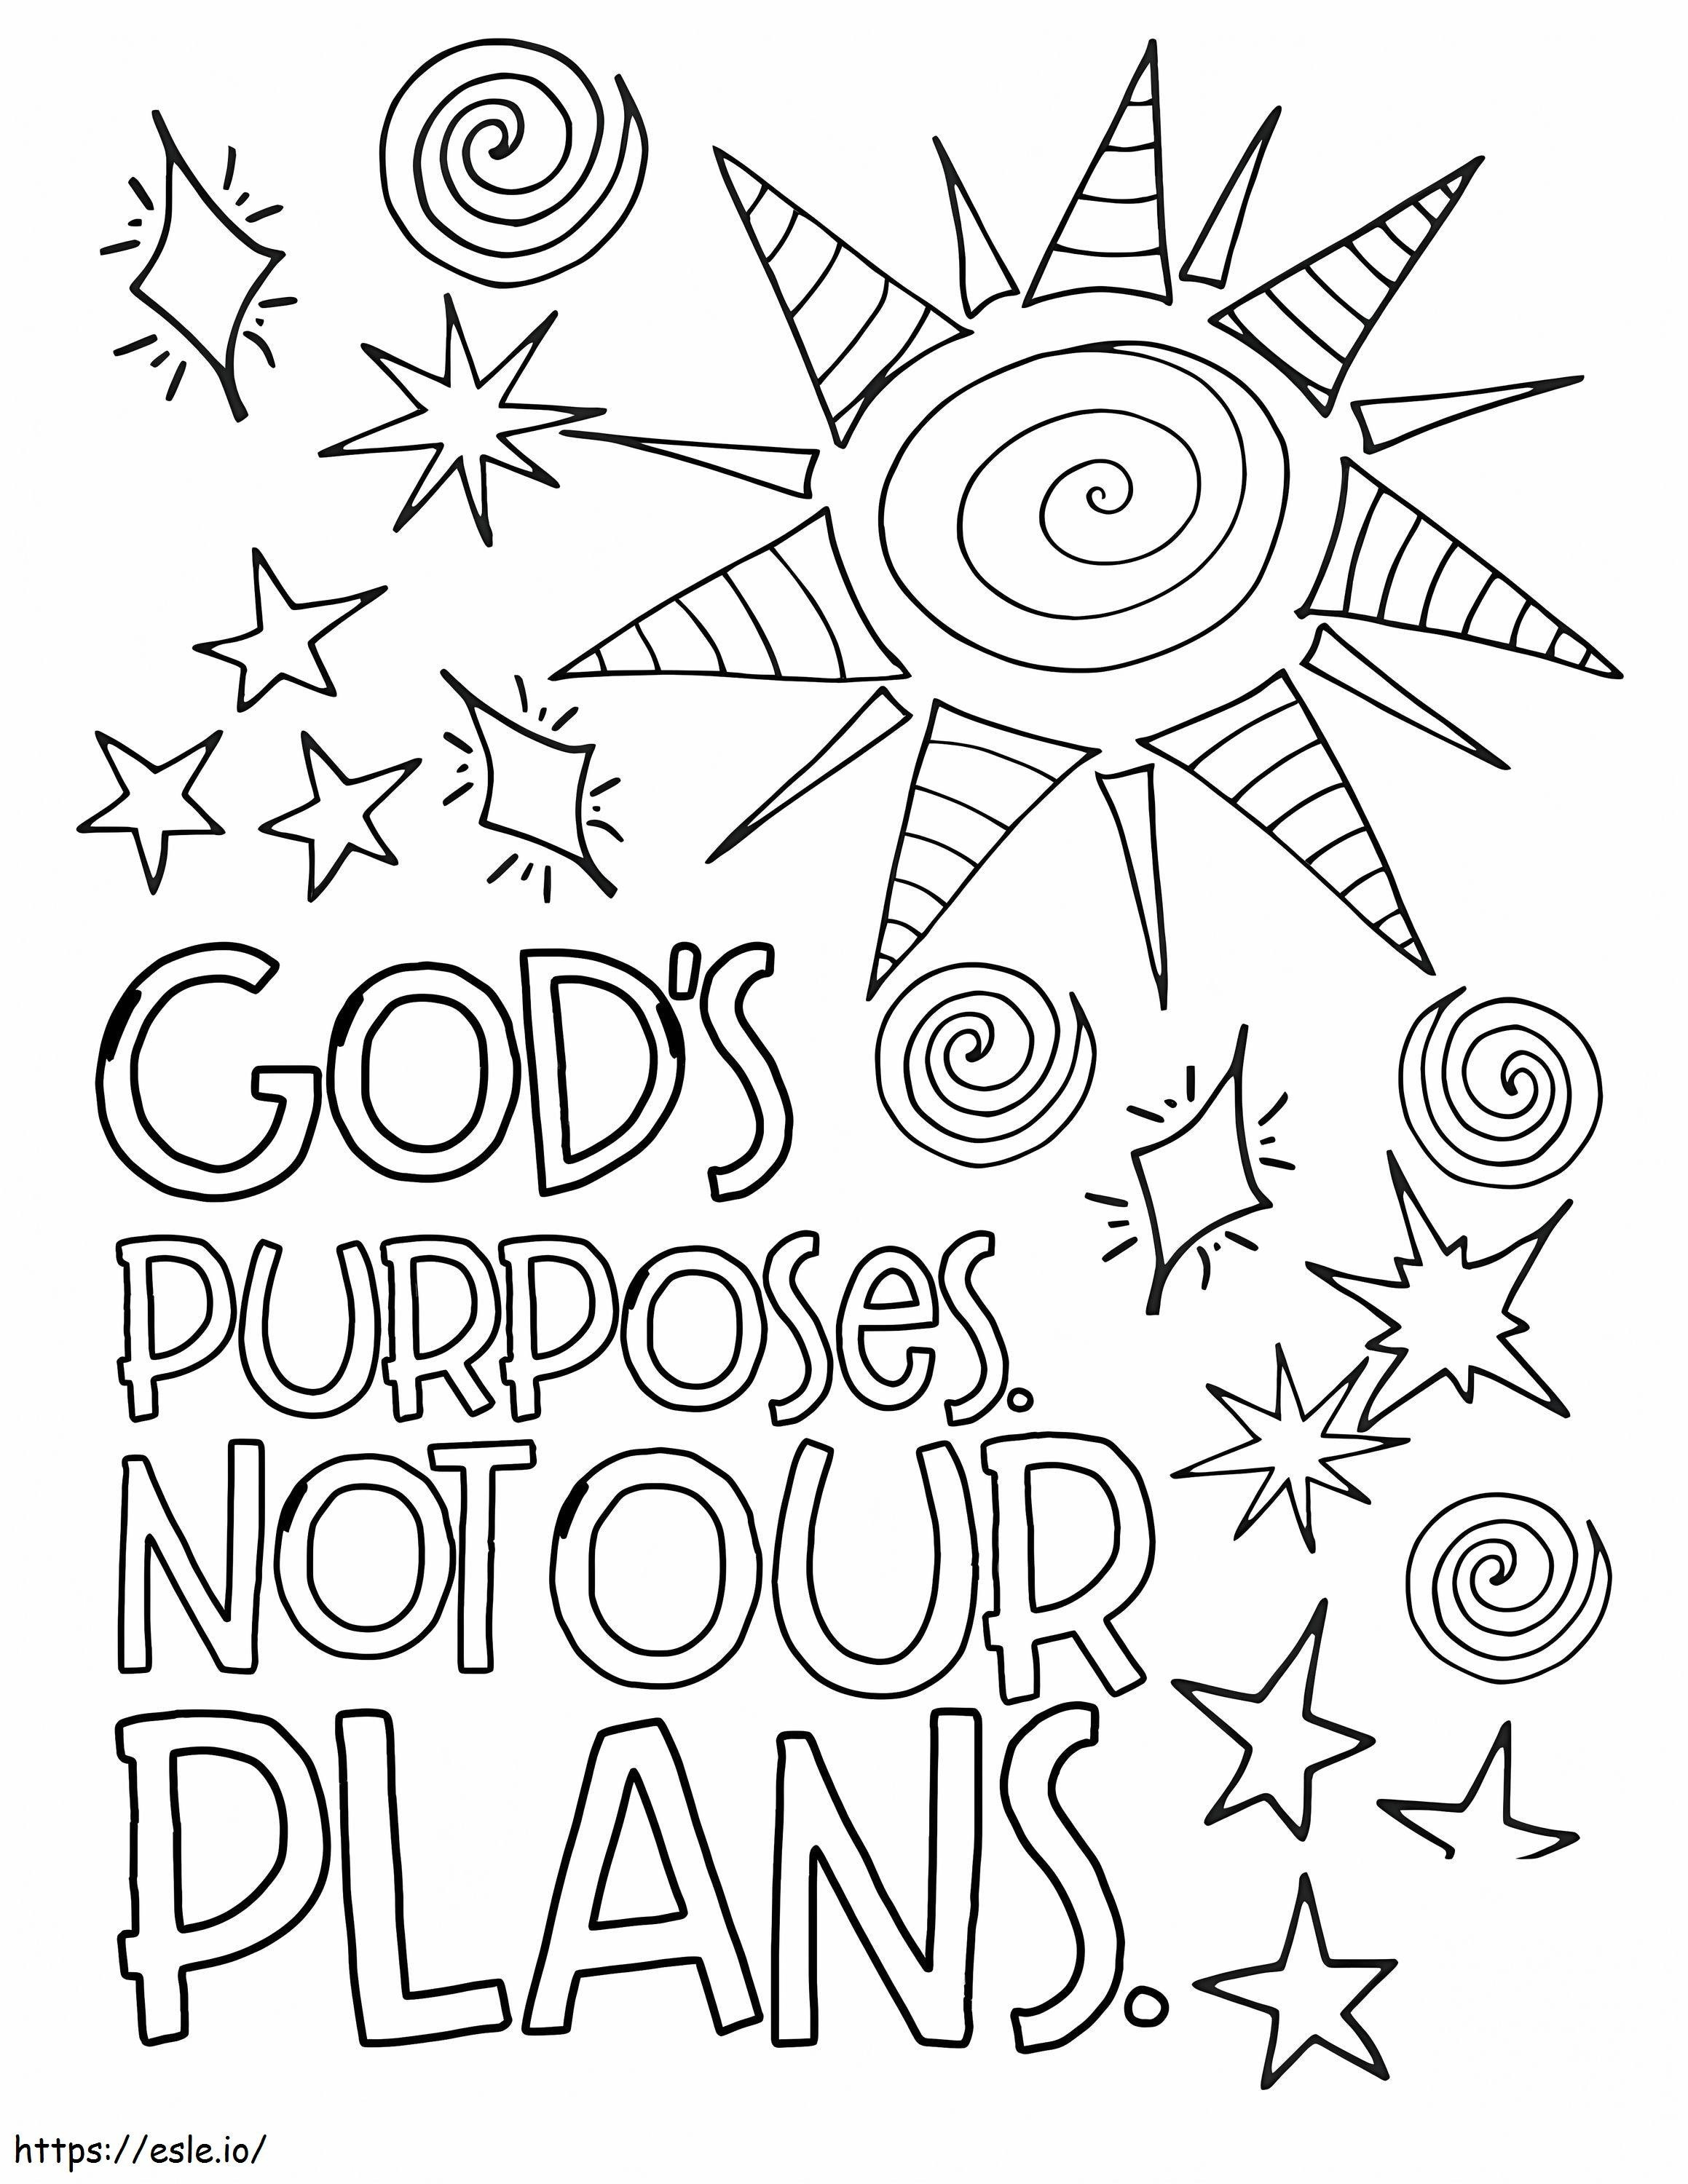 Os propósitos de Deus não são nossos planos para colorir